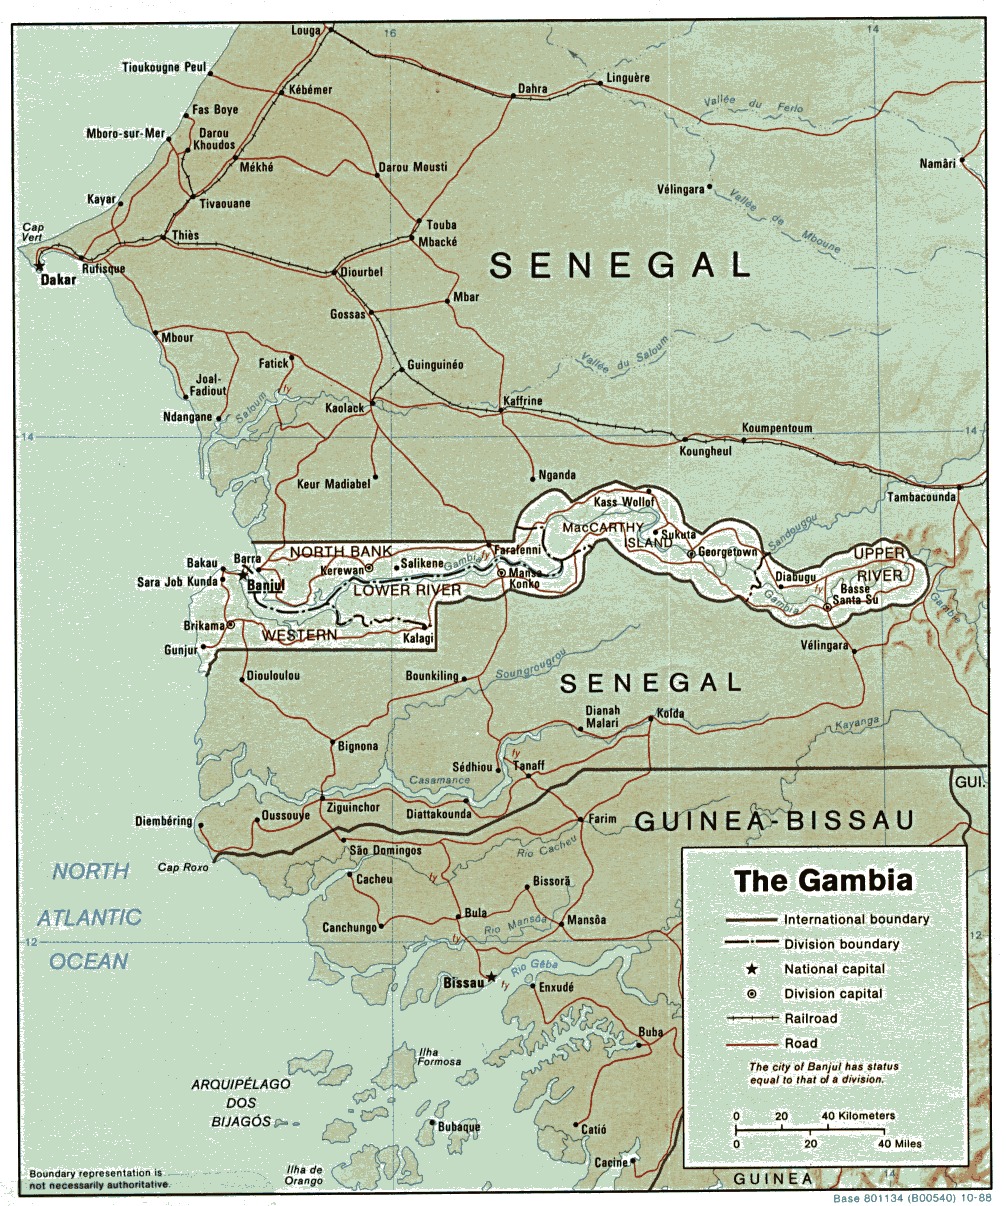 Mapa de Relieve Sombreado de Gambia